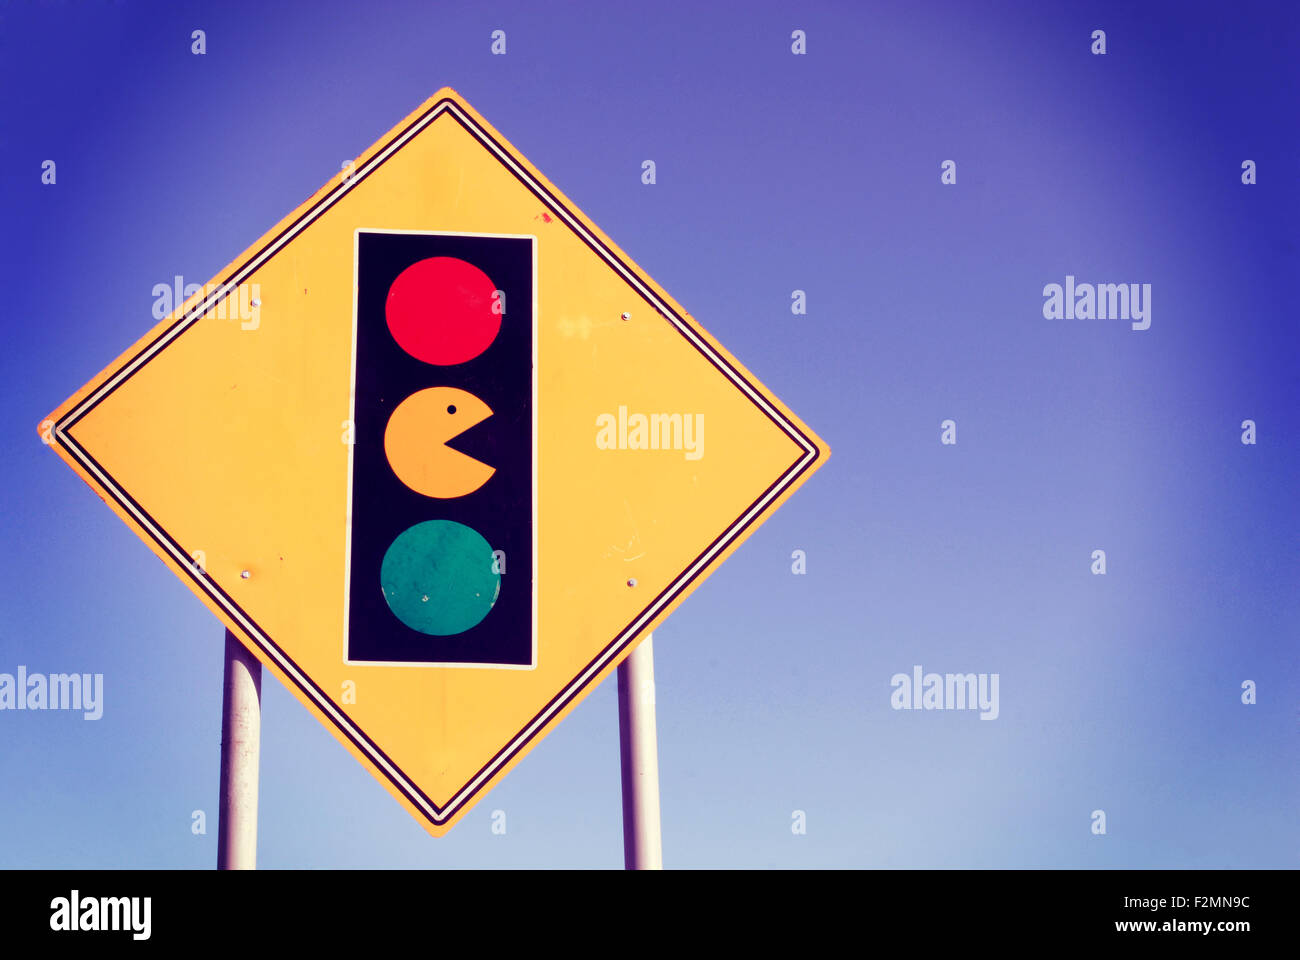 Spiel-Zone Warnzeichen, dass lustige Pacman und Ampel Freizeitaktivitäten genießen. Ideal für Poster, Web oder Online-Kampagne. Stockfoto